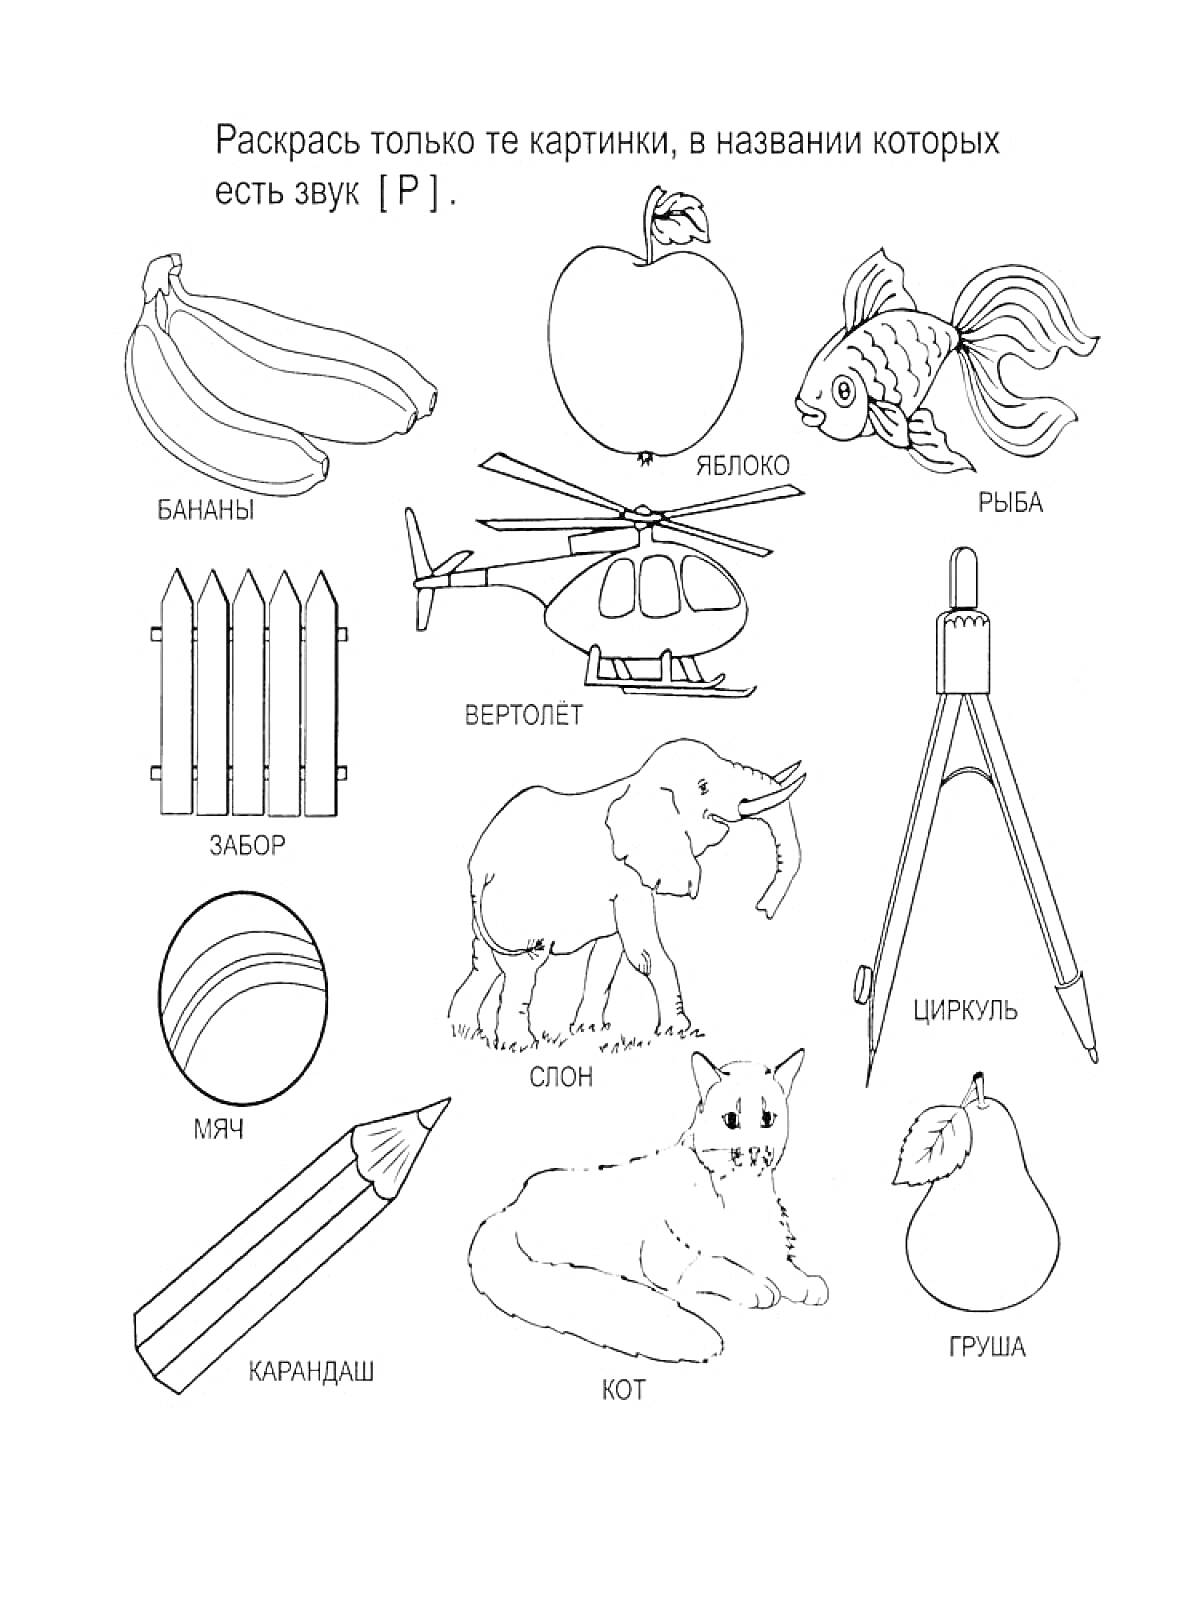 Раскраска Логопедическая раскраска - бананы, яблоко, рыба, забор, вертолет, циркуль, мяч, слон, кот, груша, карандаш